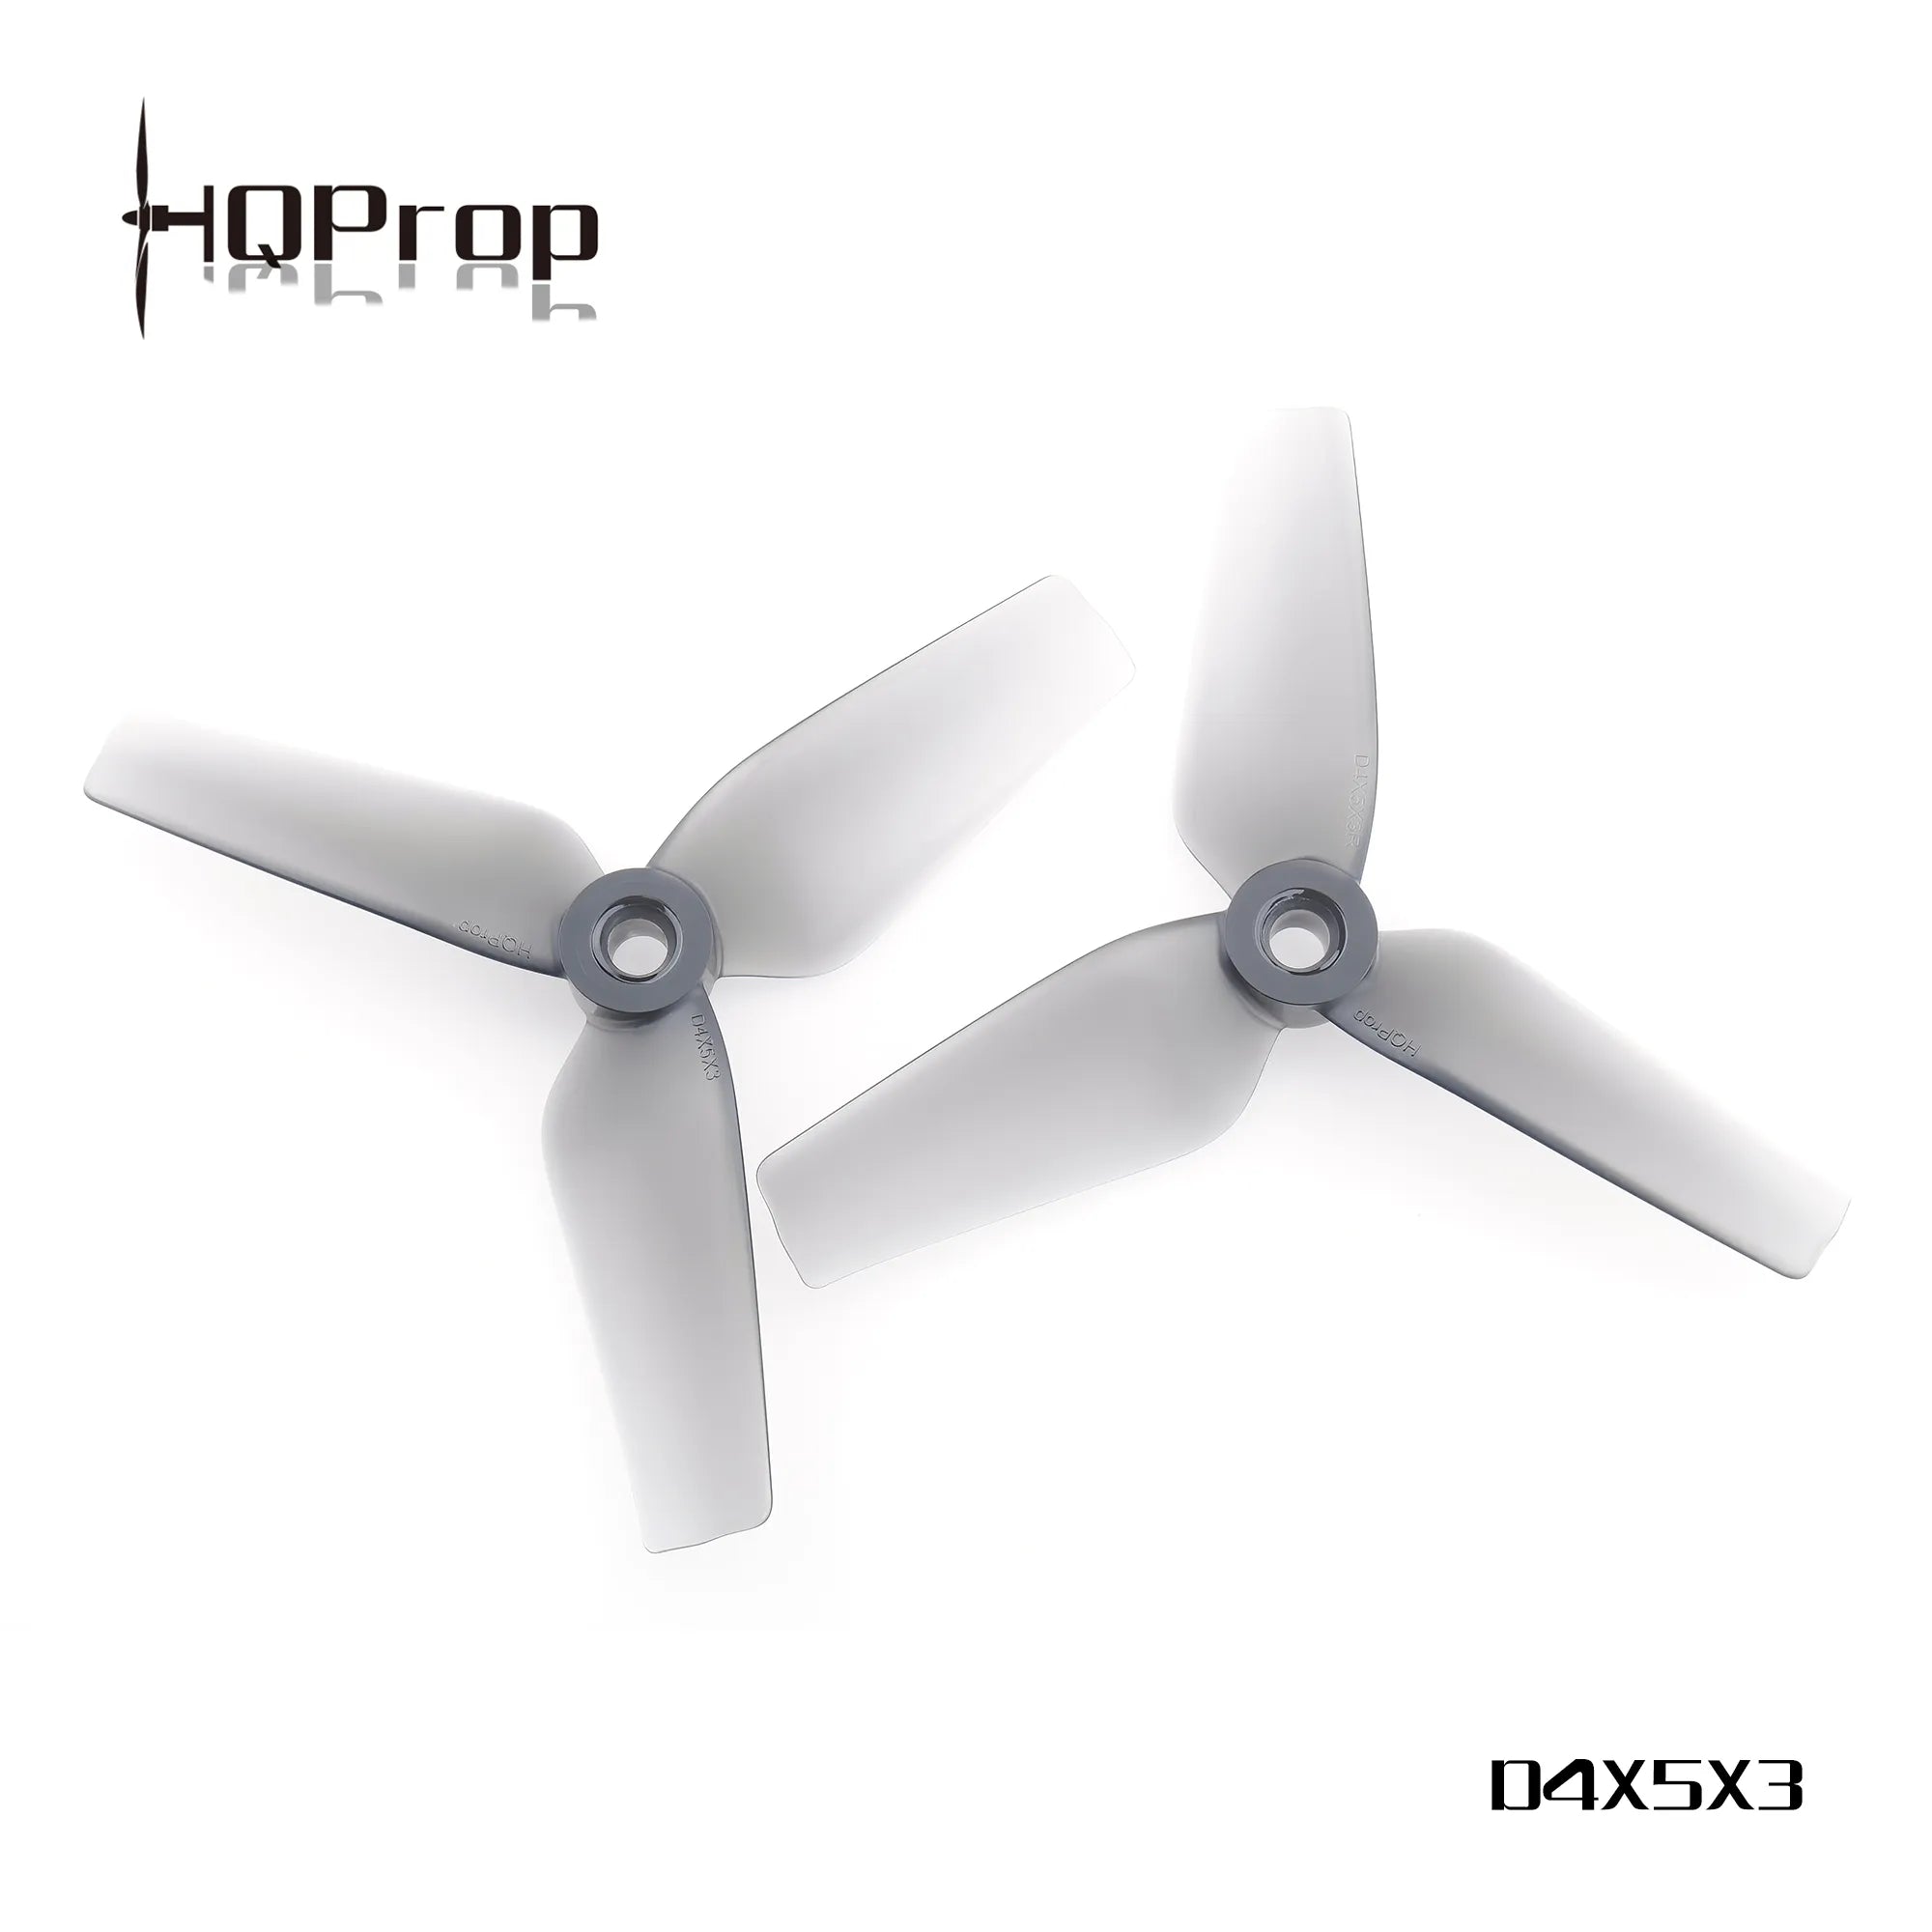 HQProp D4X5X3 Grey - DroneDynamics.ca